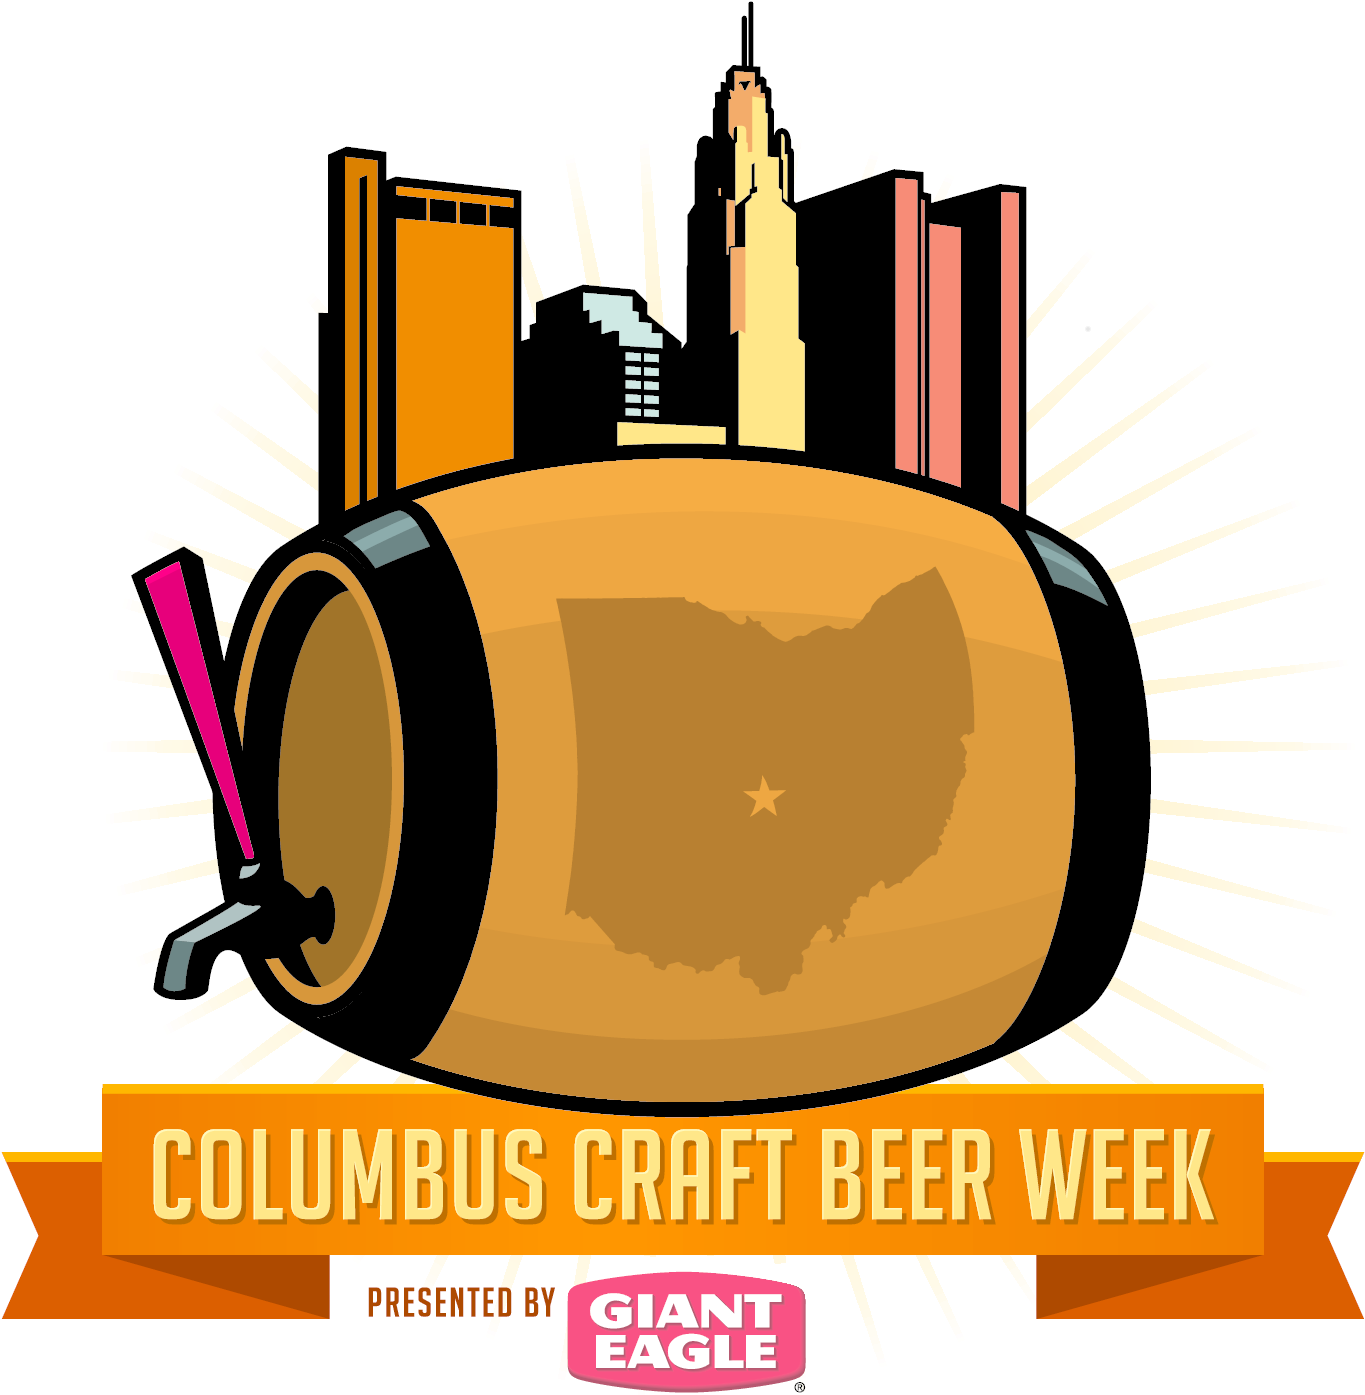 Columbus Craft Beer Week May 13-21 - Columbus Craft Beer Week 2018 (1604x1600)